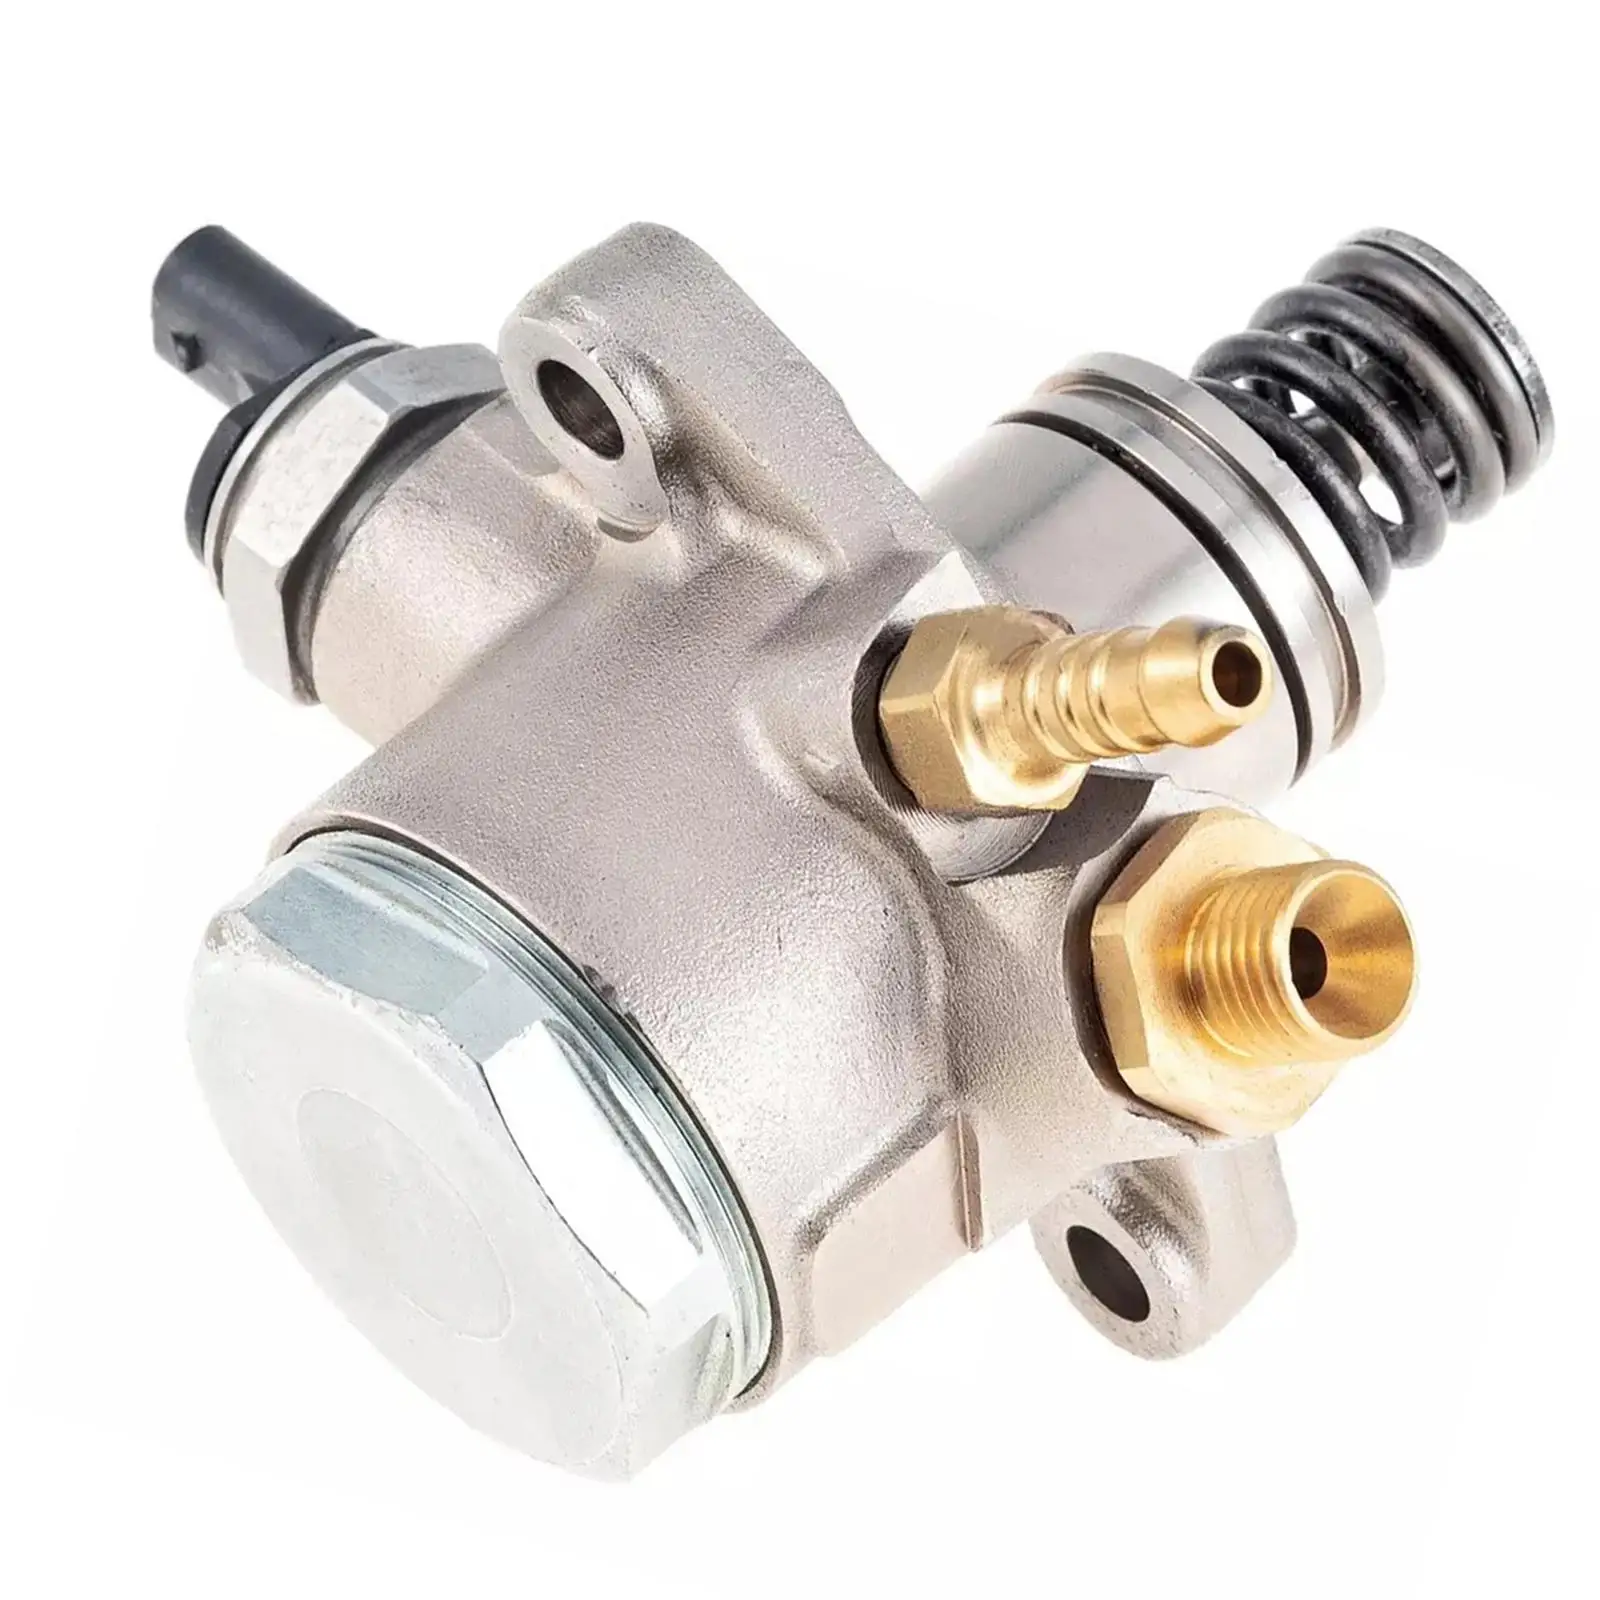 Automotive High Pressure Fuel Pump 079127025AL Accessories Replaces 079127025Q